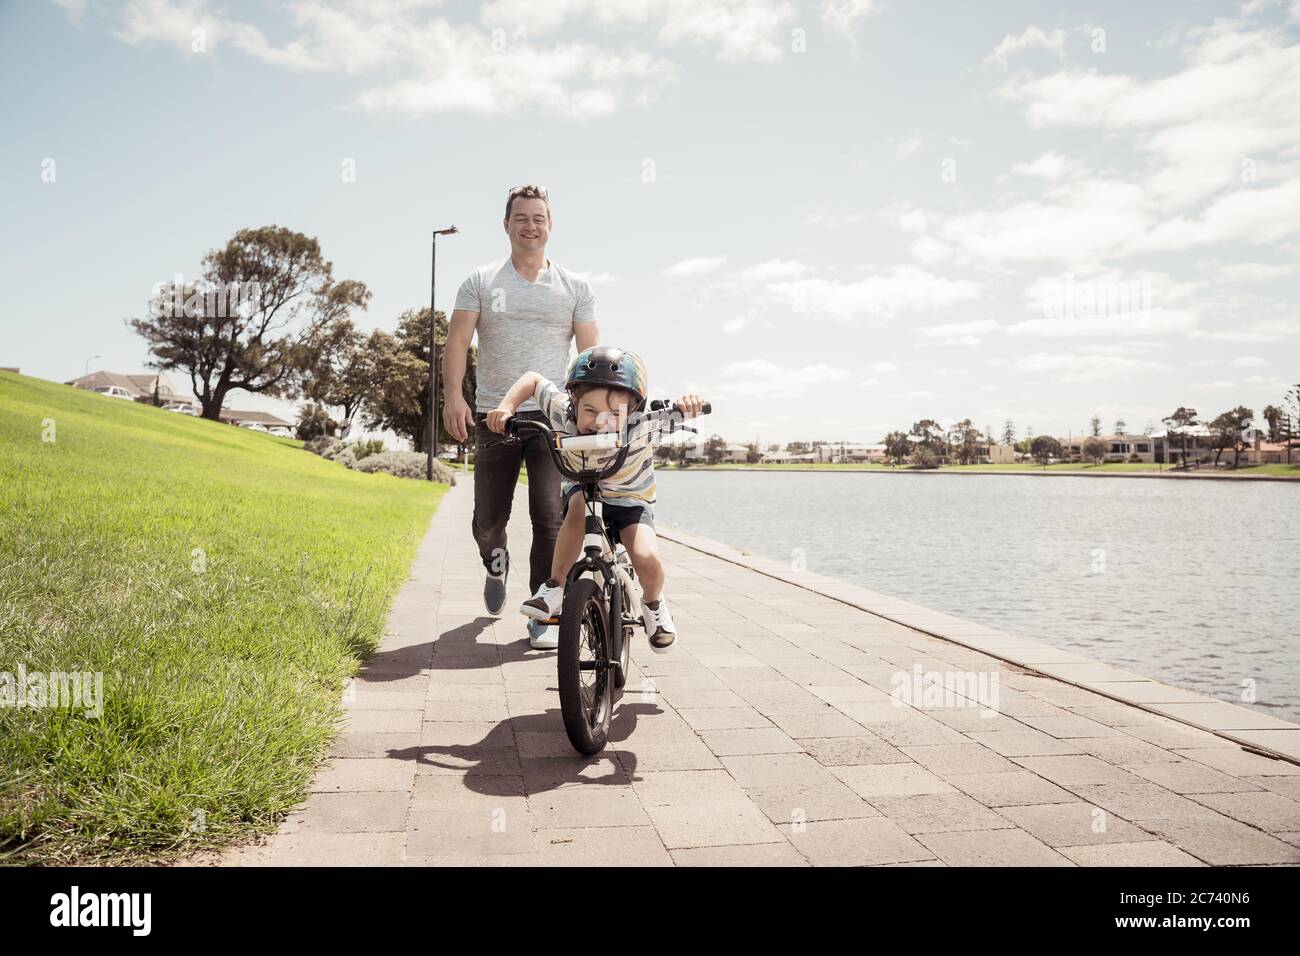 Junge lernen, ein Fahrrad mit seinem Vater im Park am See zu fahren. Vater und Sohn haben Spaß zusammen auf den Rädern. Glückliche Familie, im Freien activi Stockfoto